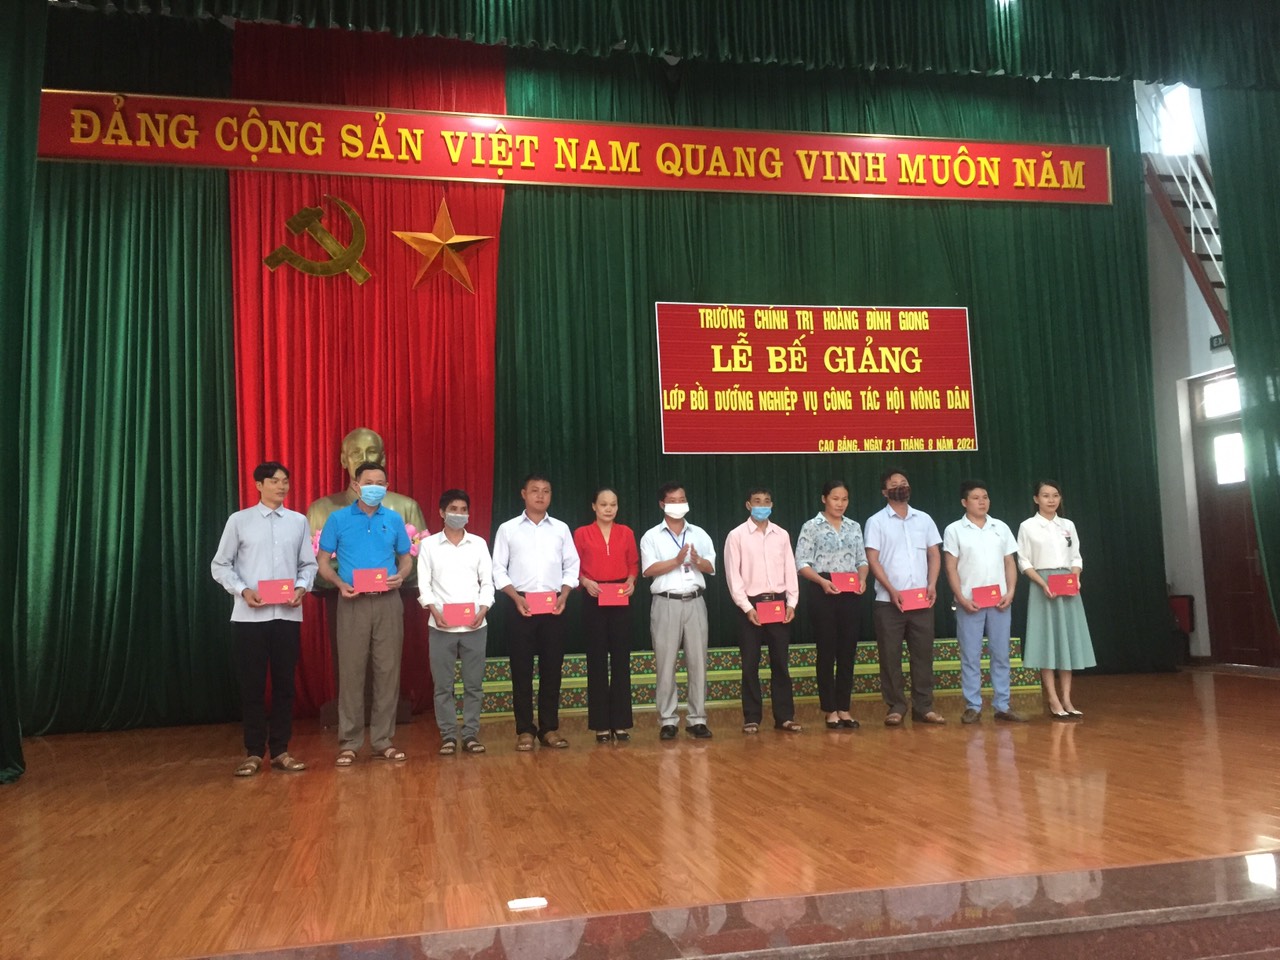 Đồng chí Nông Hoàng Hùng, Phó hiệu trưởng trường chính trị Hoàng Đình Giong trao chứng chỉ cho các học viên